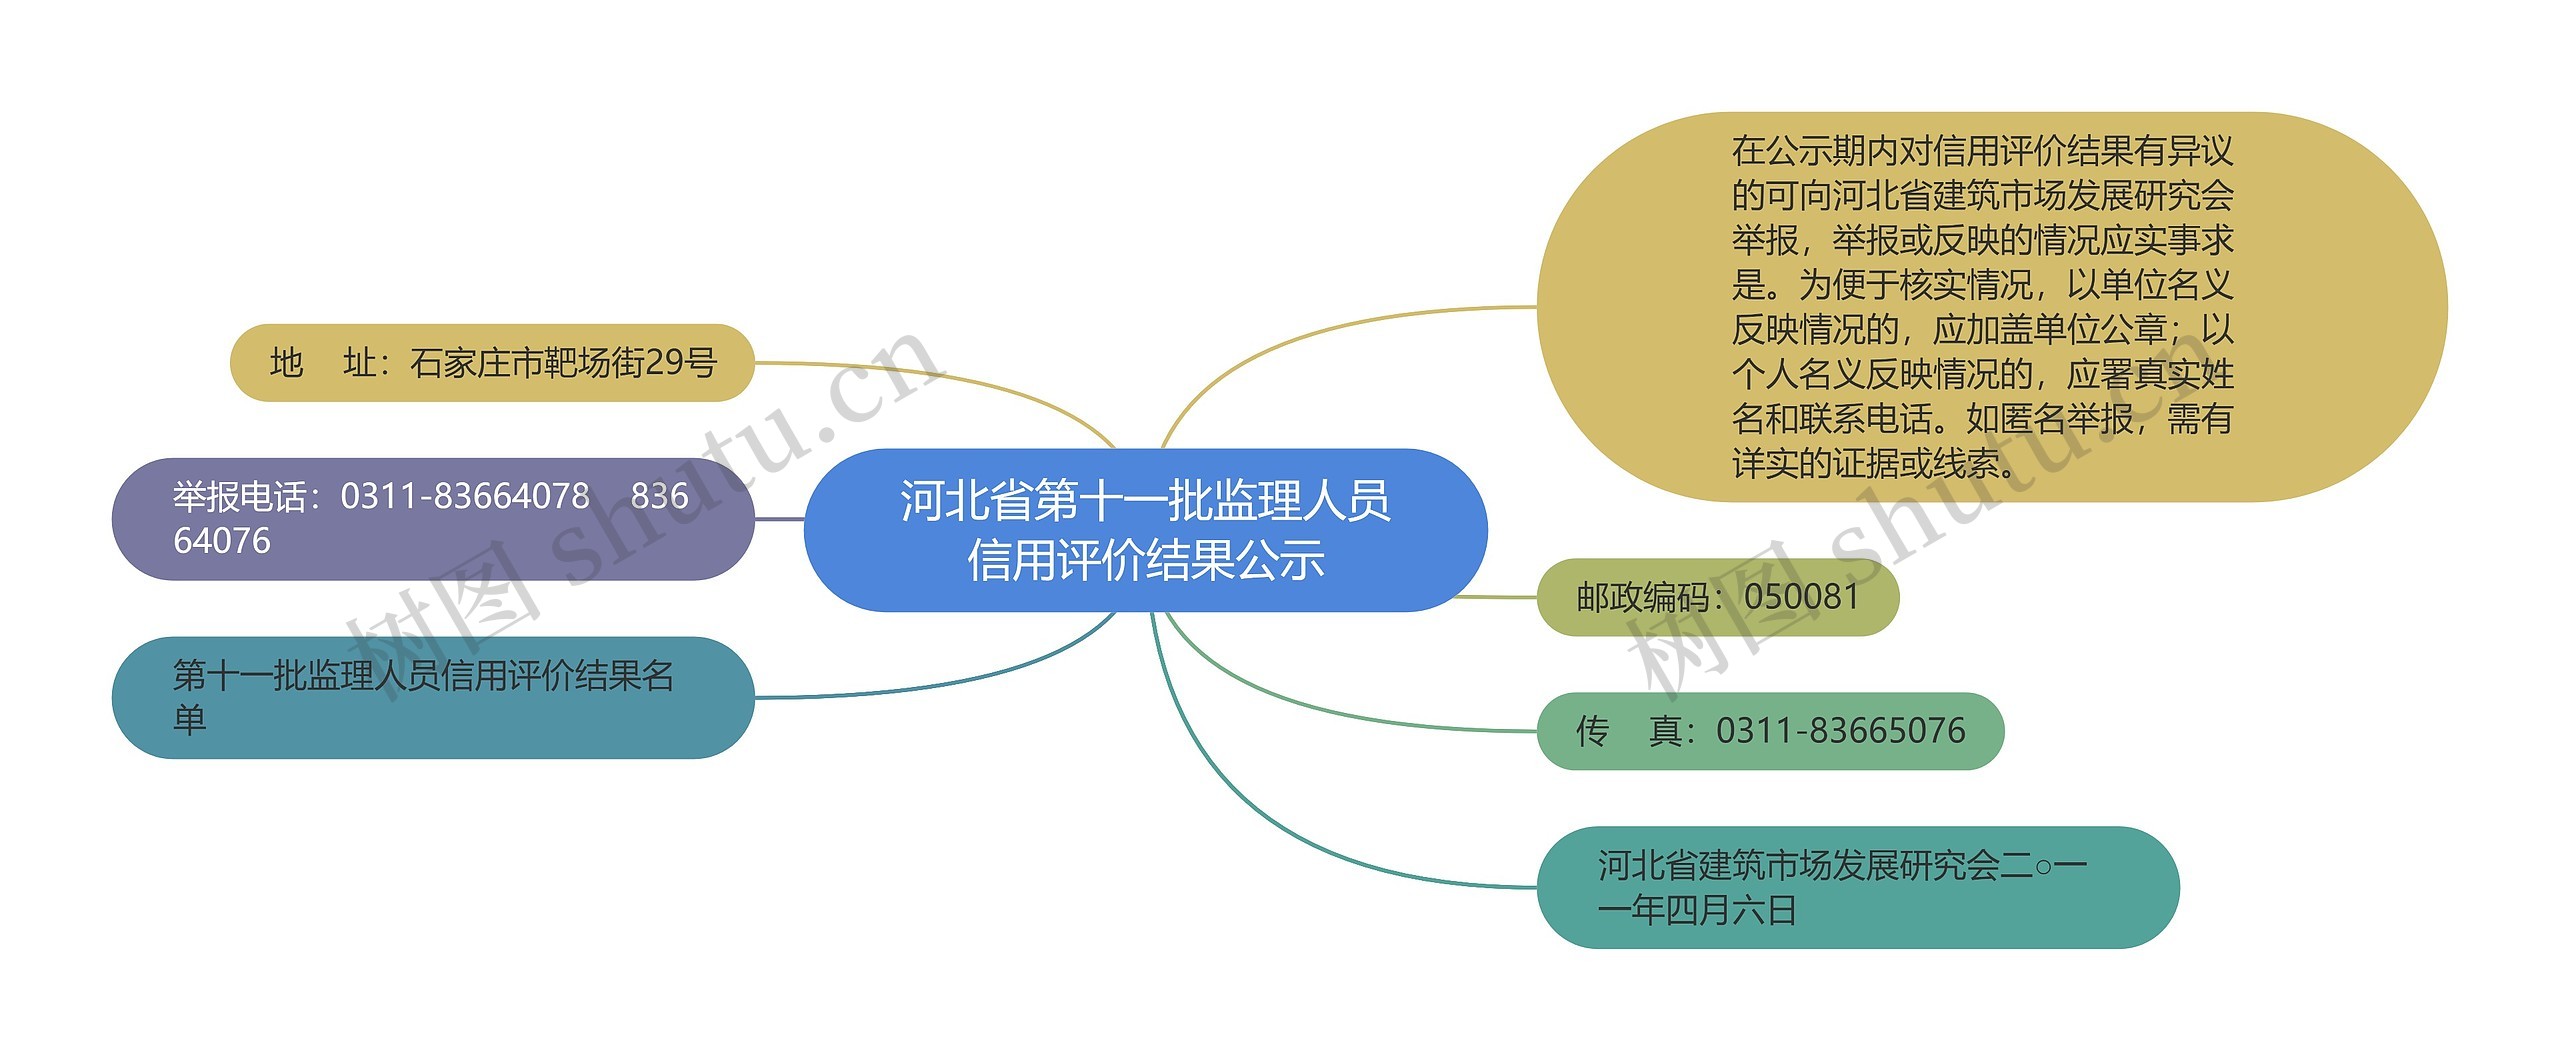 河北省第十一批监理人员信用评价结果公示思维导图